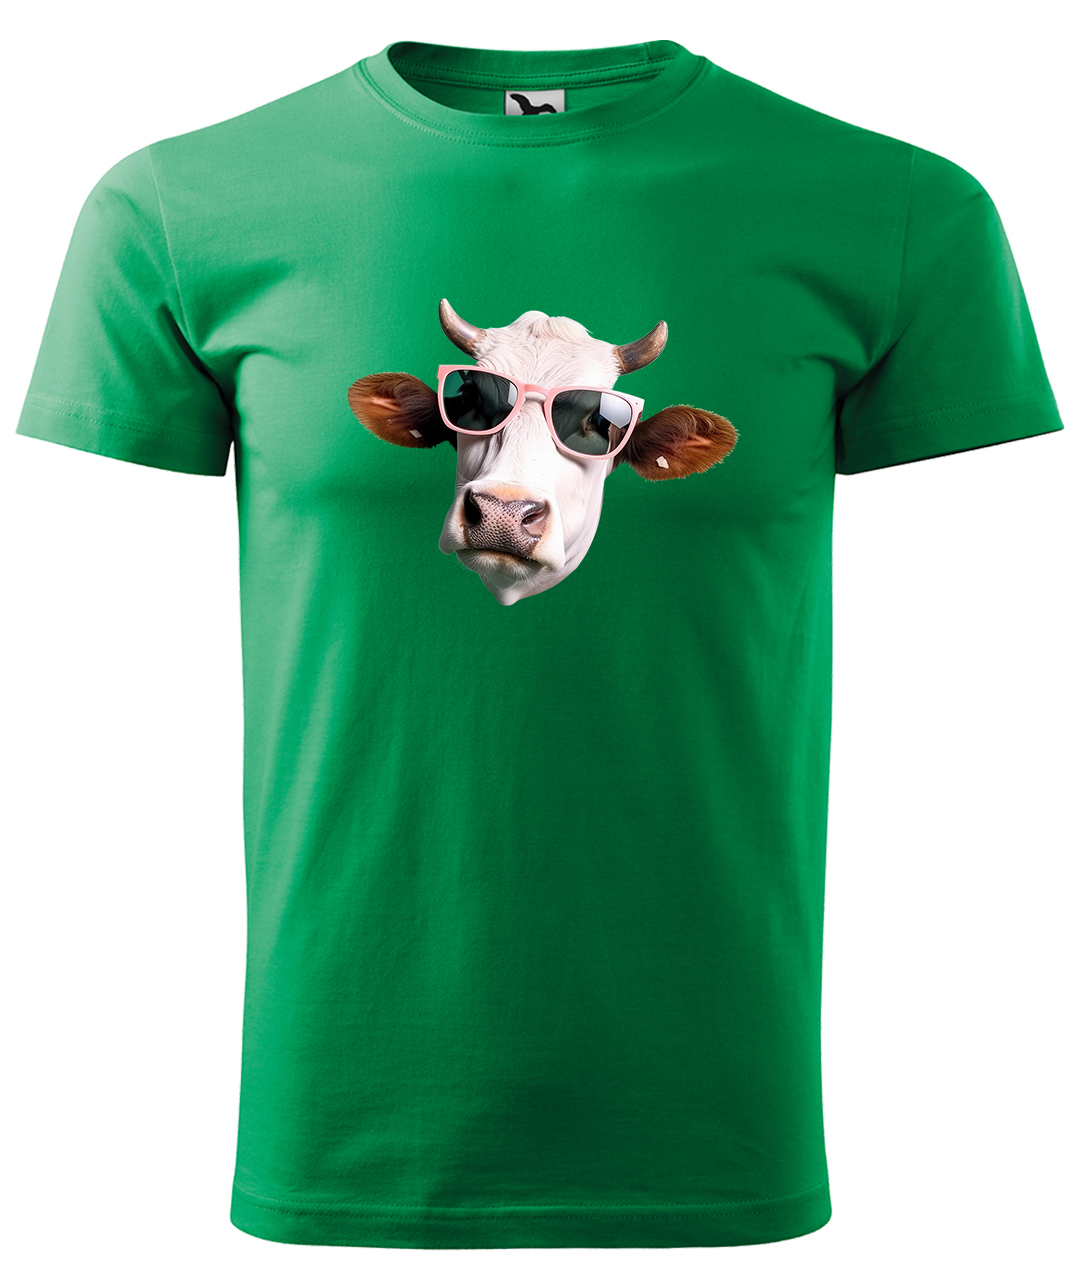 Dětské tričko s krávou - Kráva v brýlích Velikost: 4 roky / 110 cm, Barva: Středně zelená (16), Délka rukávu: Krátký rukáv